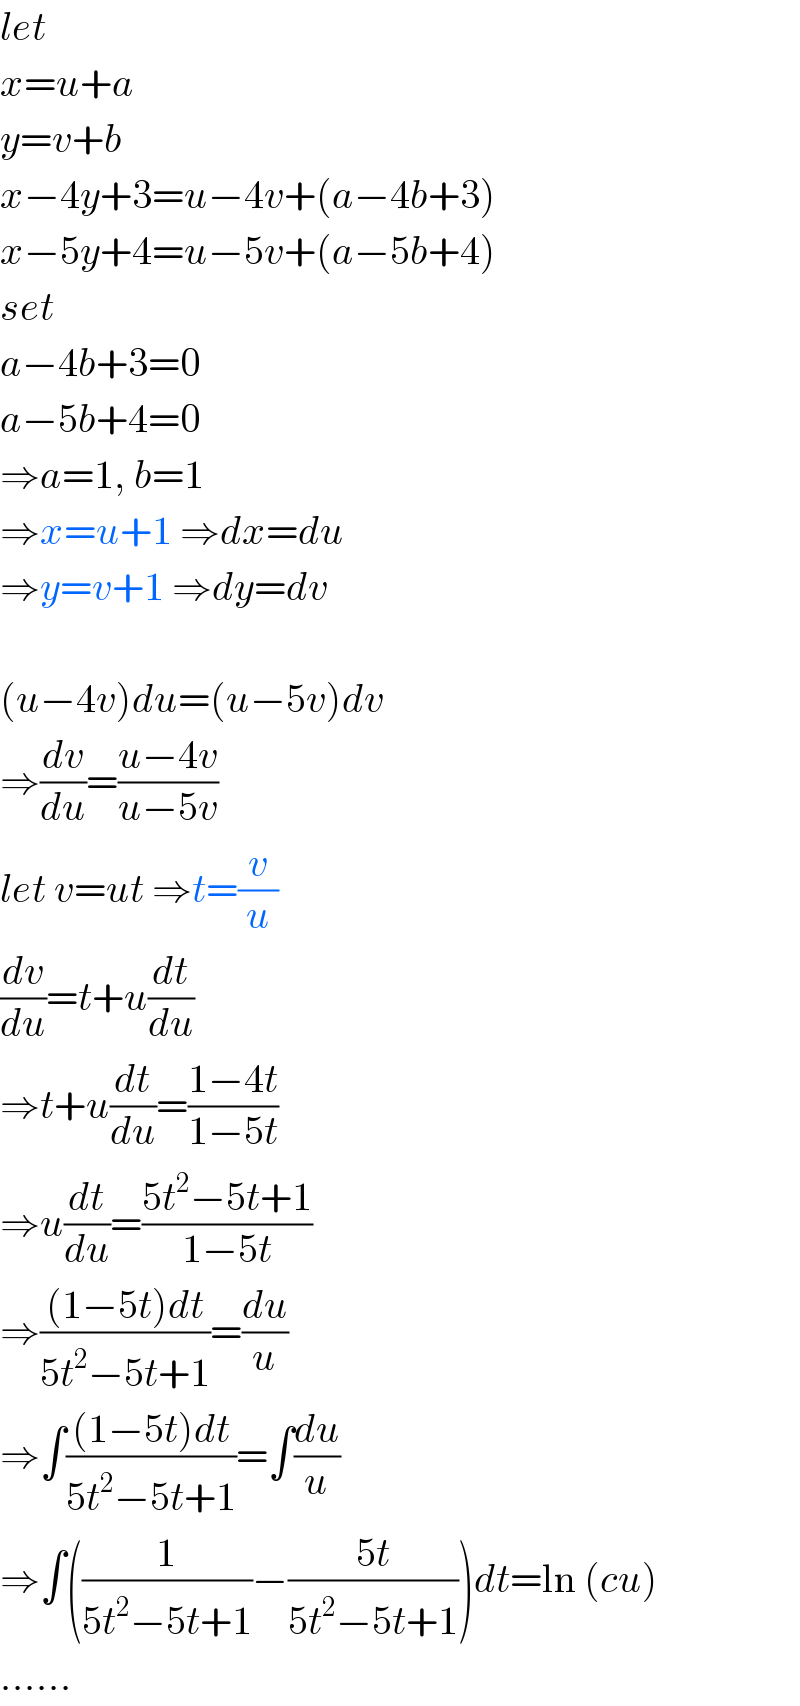 let  x=u+a  y=v+b  x−4y+3=u−4v+(a−4b+3)  x−5y+4=u−5v+(a−5b+4)  set  a−4b+3=0  a−5b+4=0  ⇒a=1, b=1  ⇒x=u+1 ⇒dx=du  ⇒y=v+1 ⇒dy=dv    (u−4v)du=(u−5v)dv  ⇒(dv/du)=((u−4v)/(u−5v))  let v=ut ⇒t=(v/u)  (dv/du)=t+u(dt/du)  ⇒t+u(dt/du)=((1−4t)/(1−5t))  ⇒u(dt/du)=((5t^2 −5t+1)/(1−5t))  ⇒(((1−5t)dt)/(5t^2 −5t+1))=(du/u)  ⇒∫(((1−5t)dt)/(5t^2 −5t+1))=∫(du/u)  ⇒∫((1/(5t^2 −5t+1))−((5t)/(5t^2 −5t+1)))dt=ln (cu)  ......  